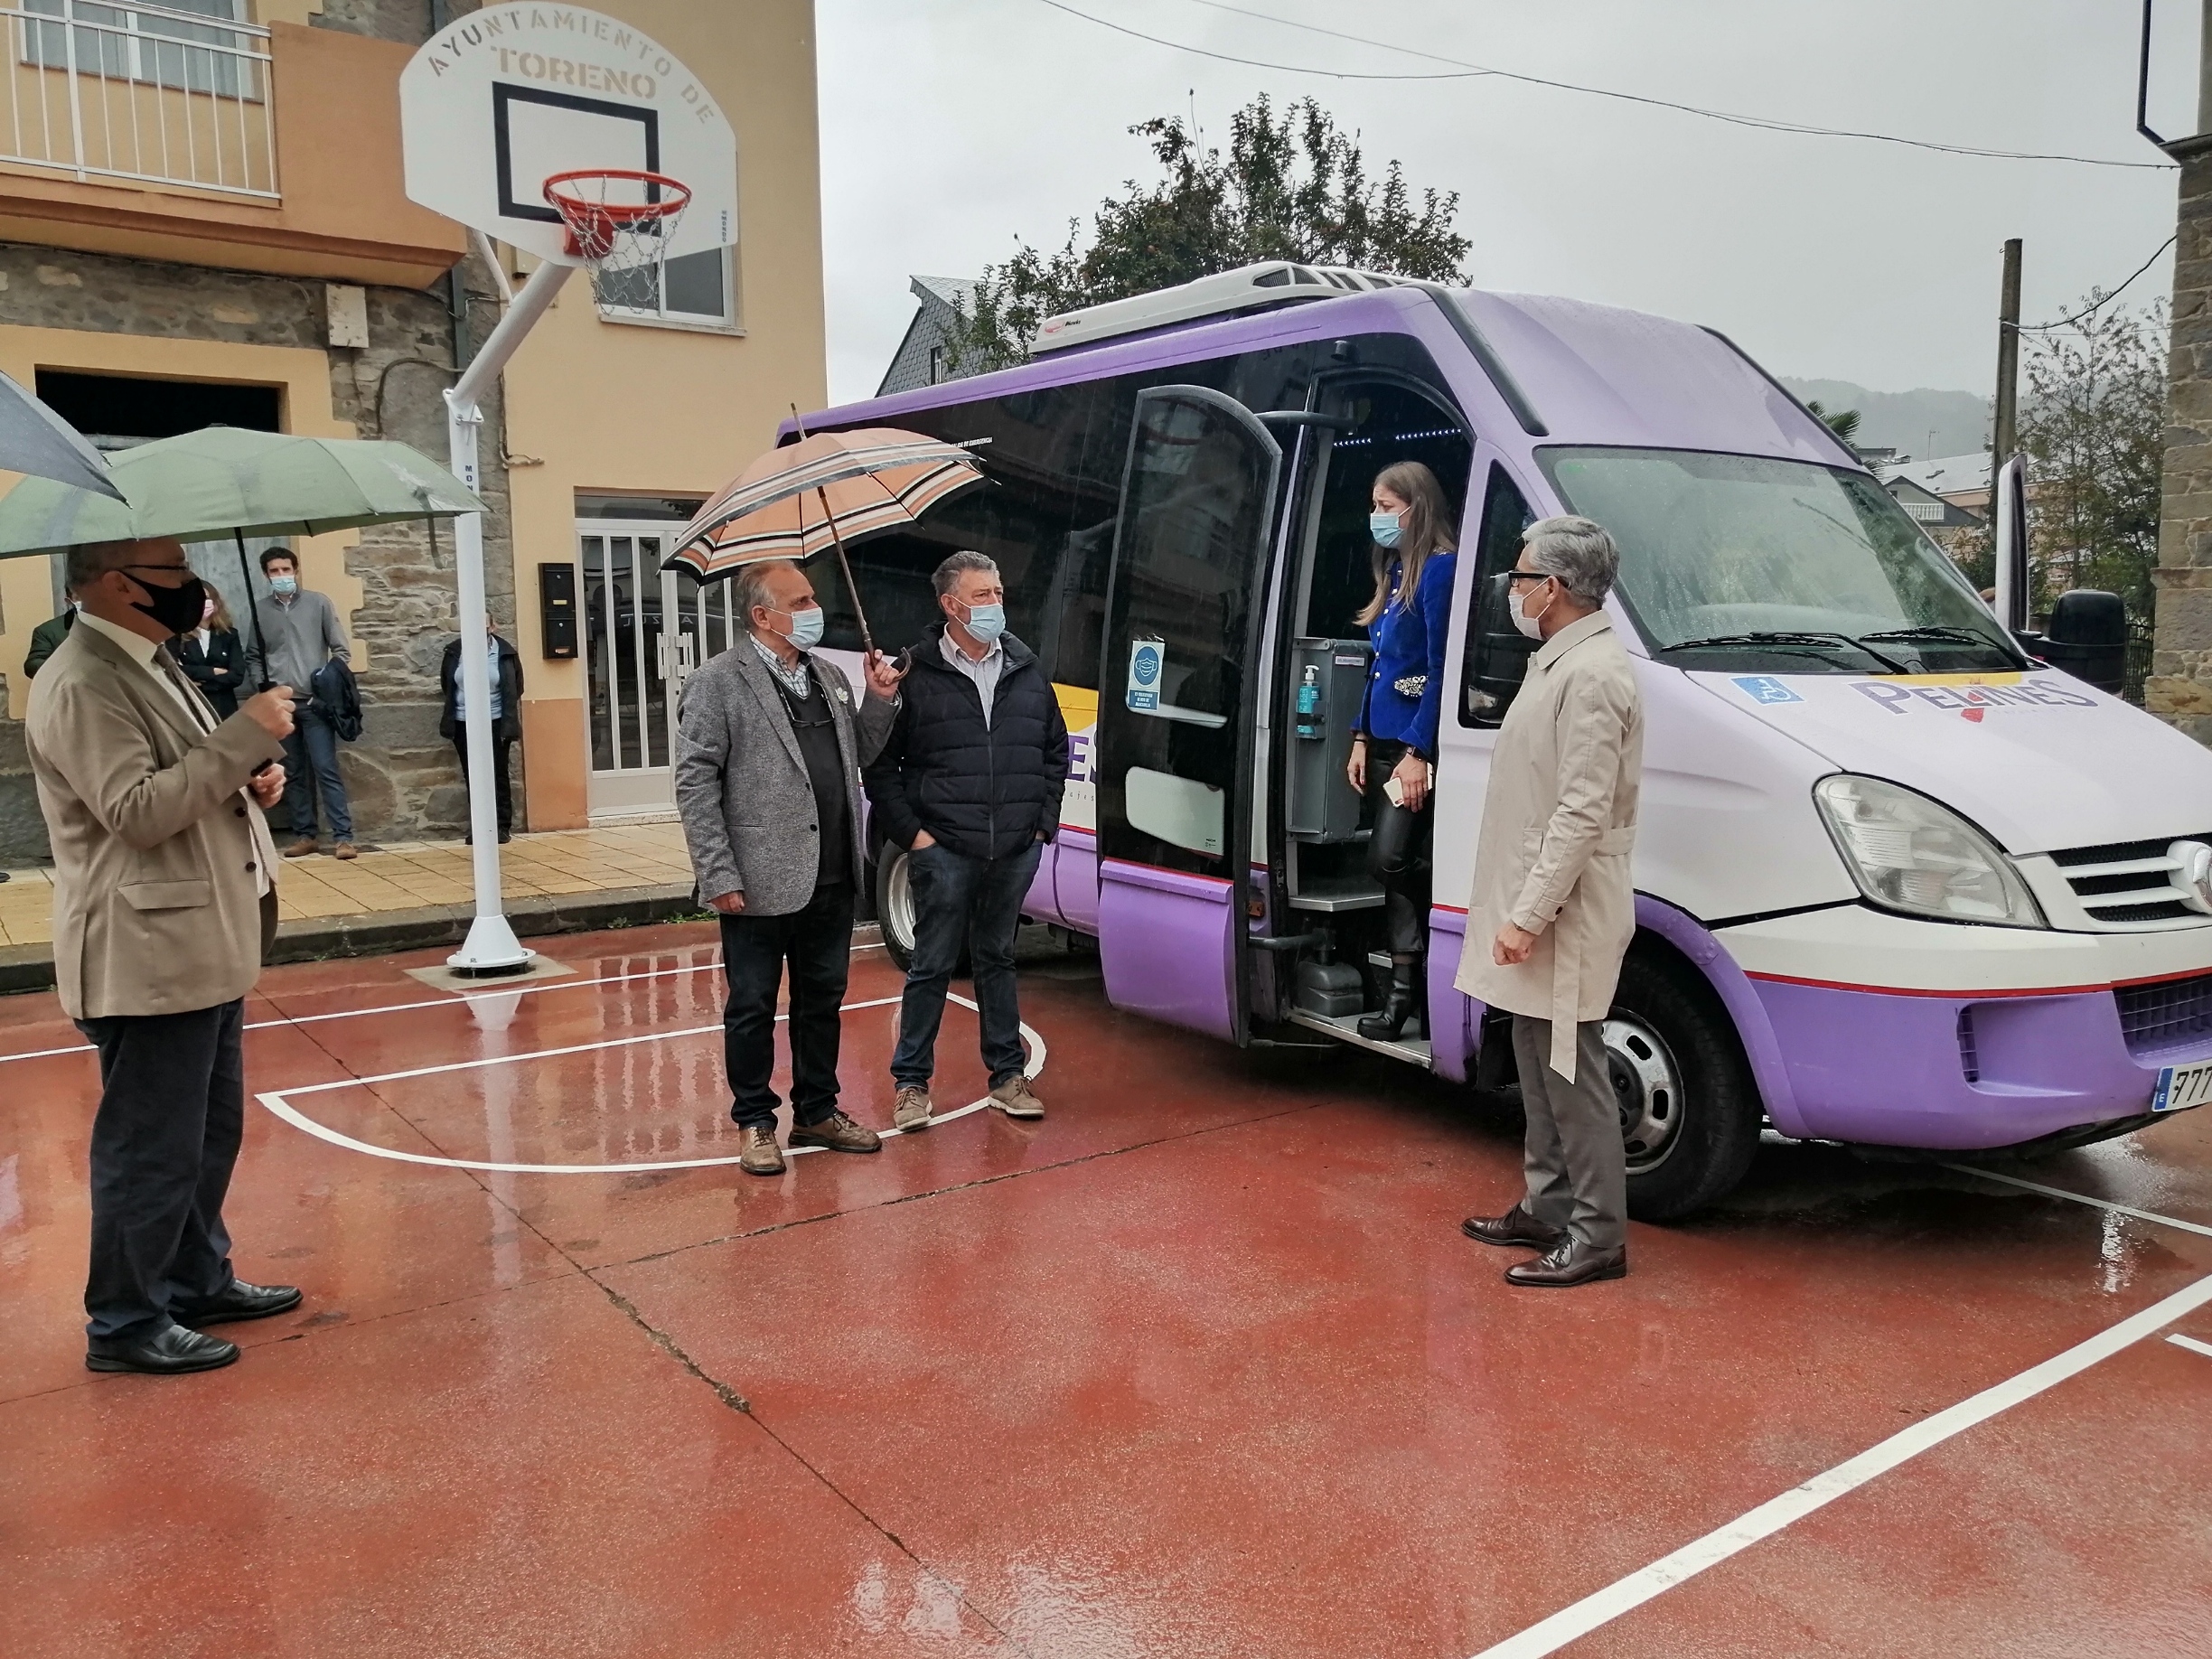 Arranca en Toreno, Berlanga del Bierzo y Páramo del Sil el bono rural de transporte gratuito a la demanda 1